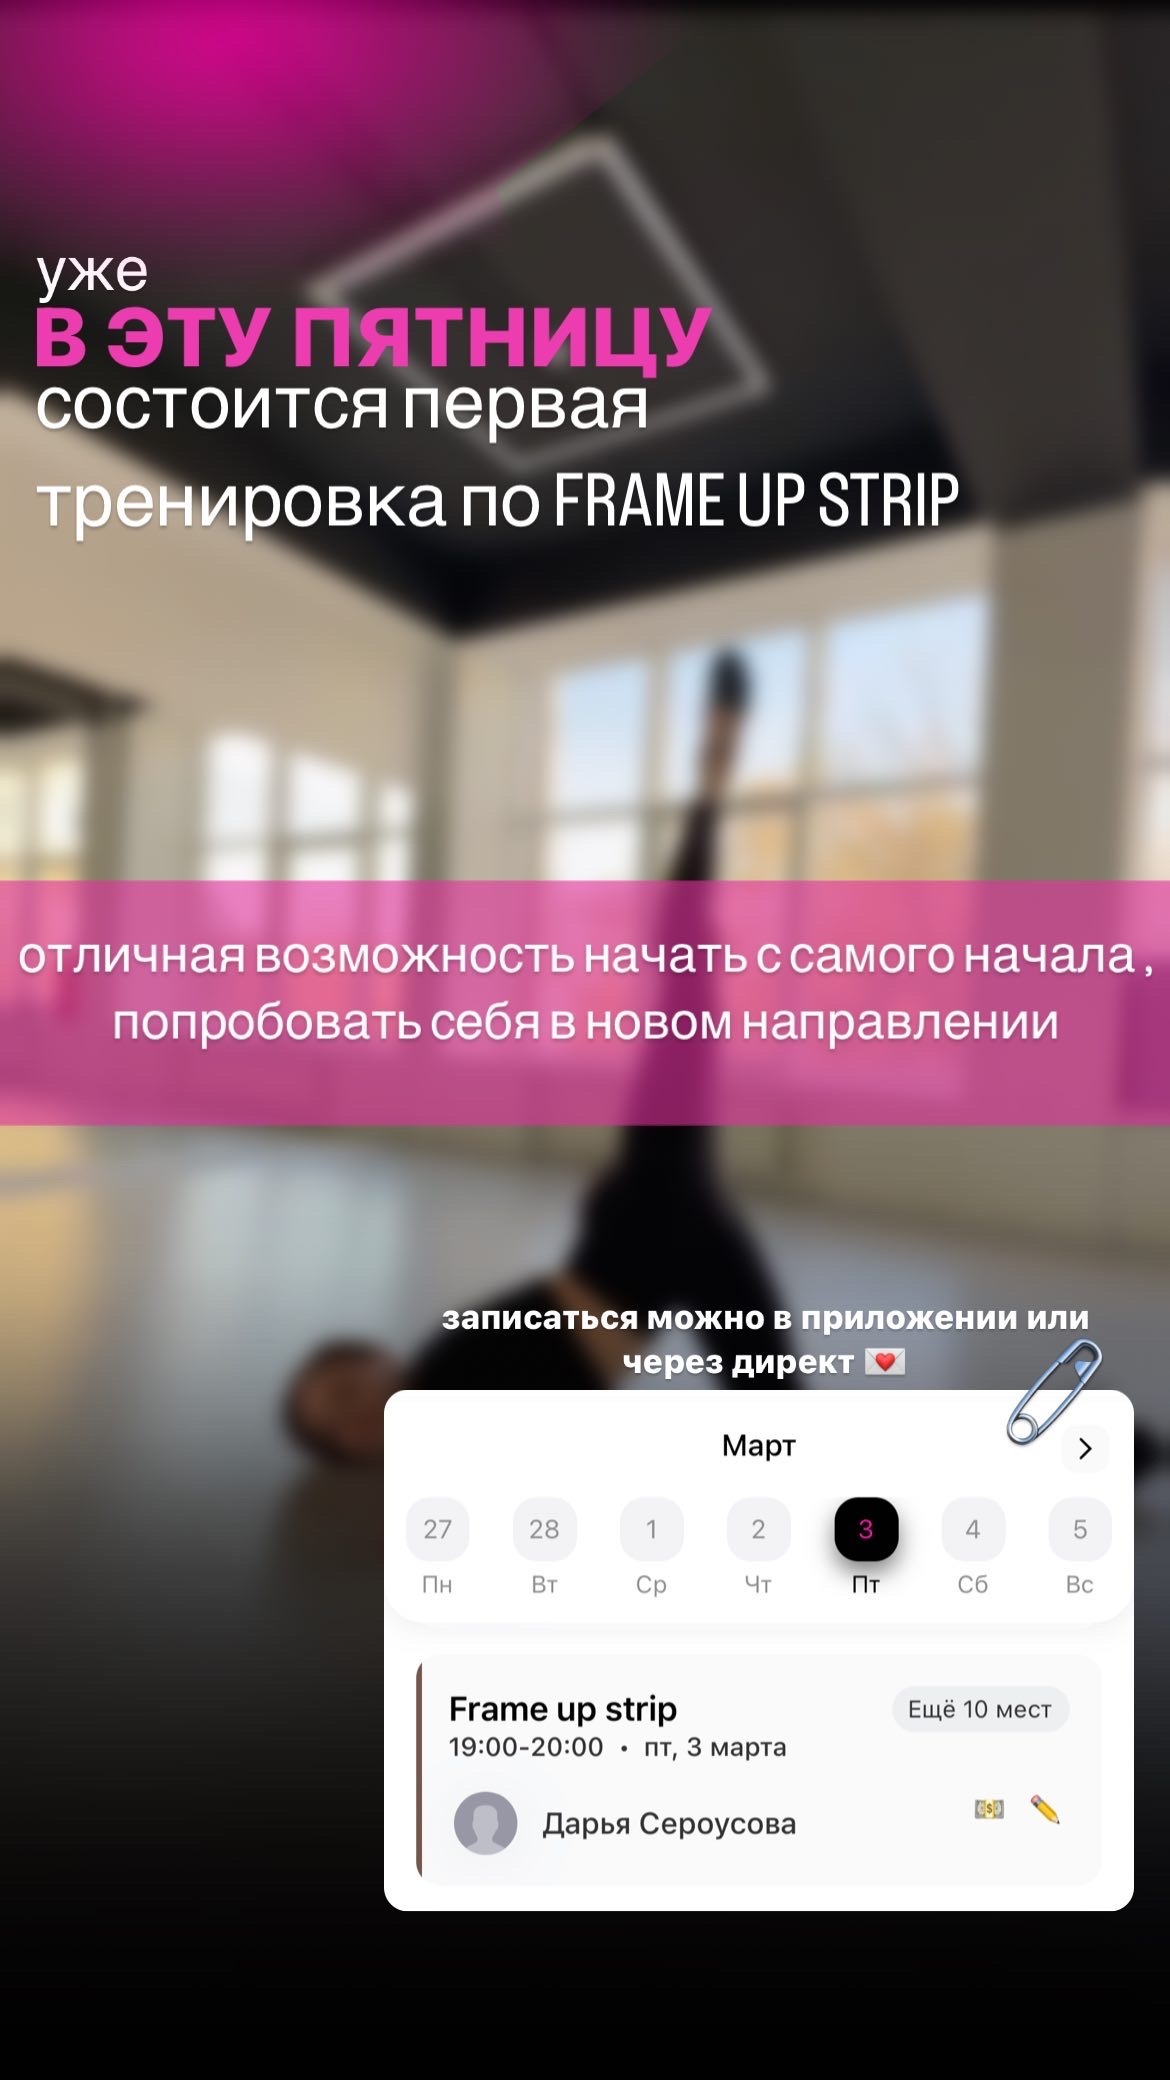 Самое время записаться на новое танцевальное направление FRAME UP STRIP в студии LEEK DANCE FIT в Ставрополе, юго-запад